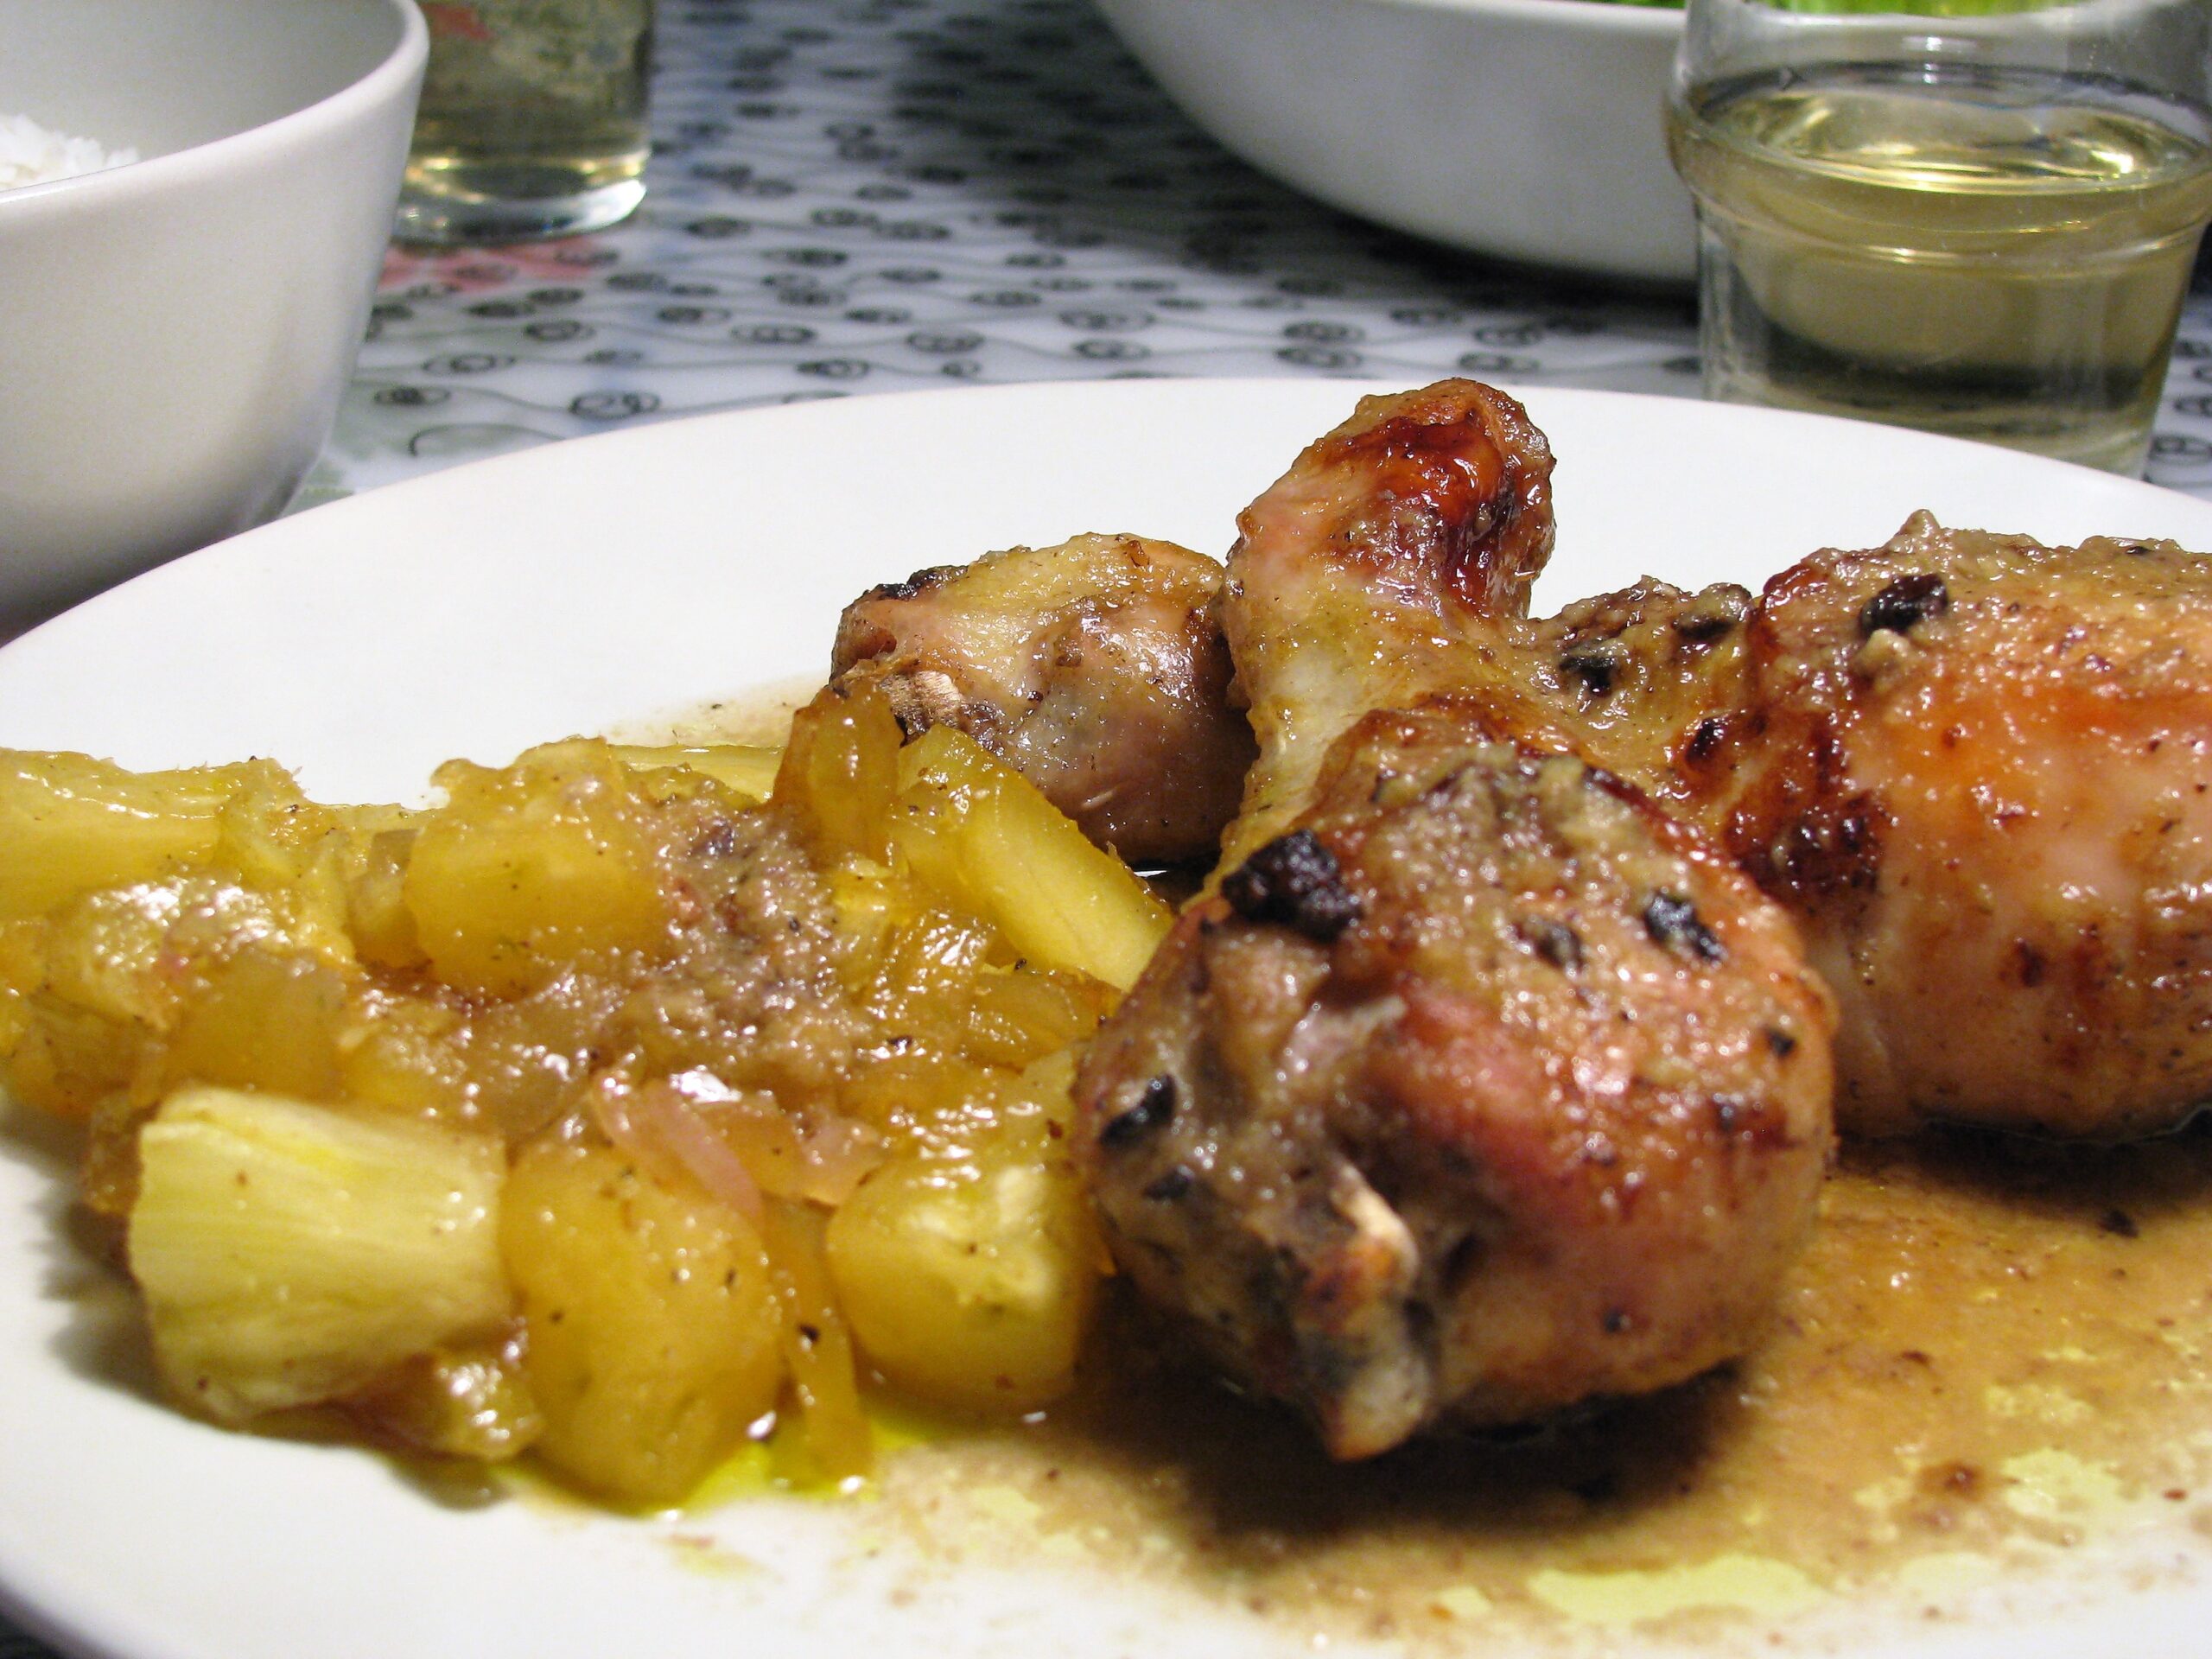 Κοπανάκια κοτόπουλου με σάλτσα ανανά – ρούμι και μπασμάτι στον ατμό